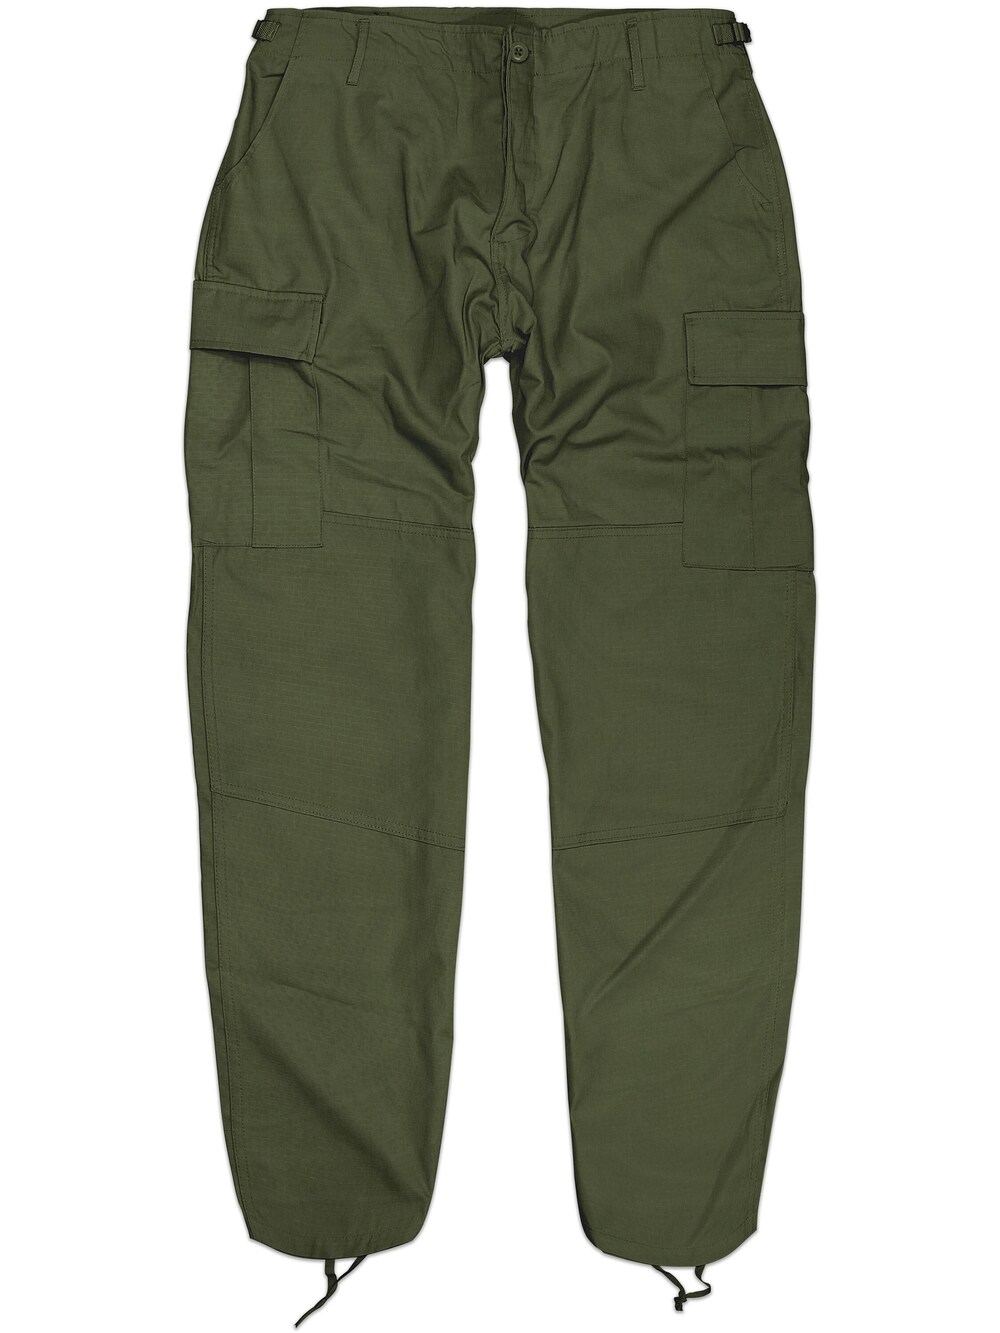 Зауженные брюки-карго Normani Terrain, оливковое зауженные брюки карго 2y studios оливковое